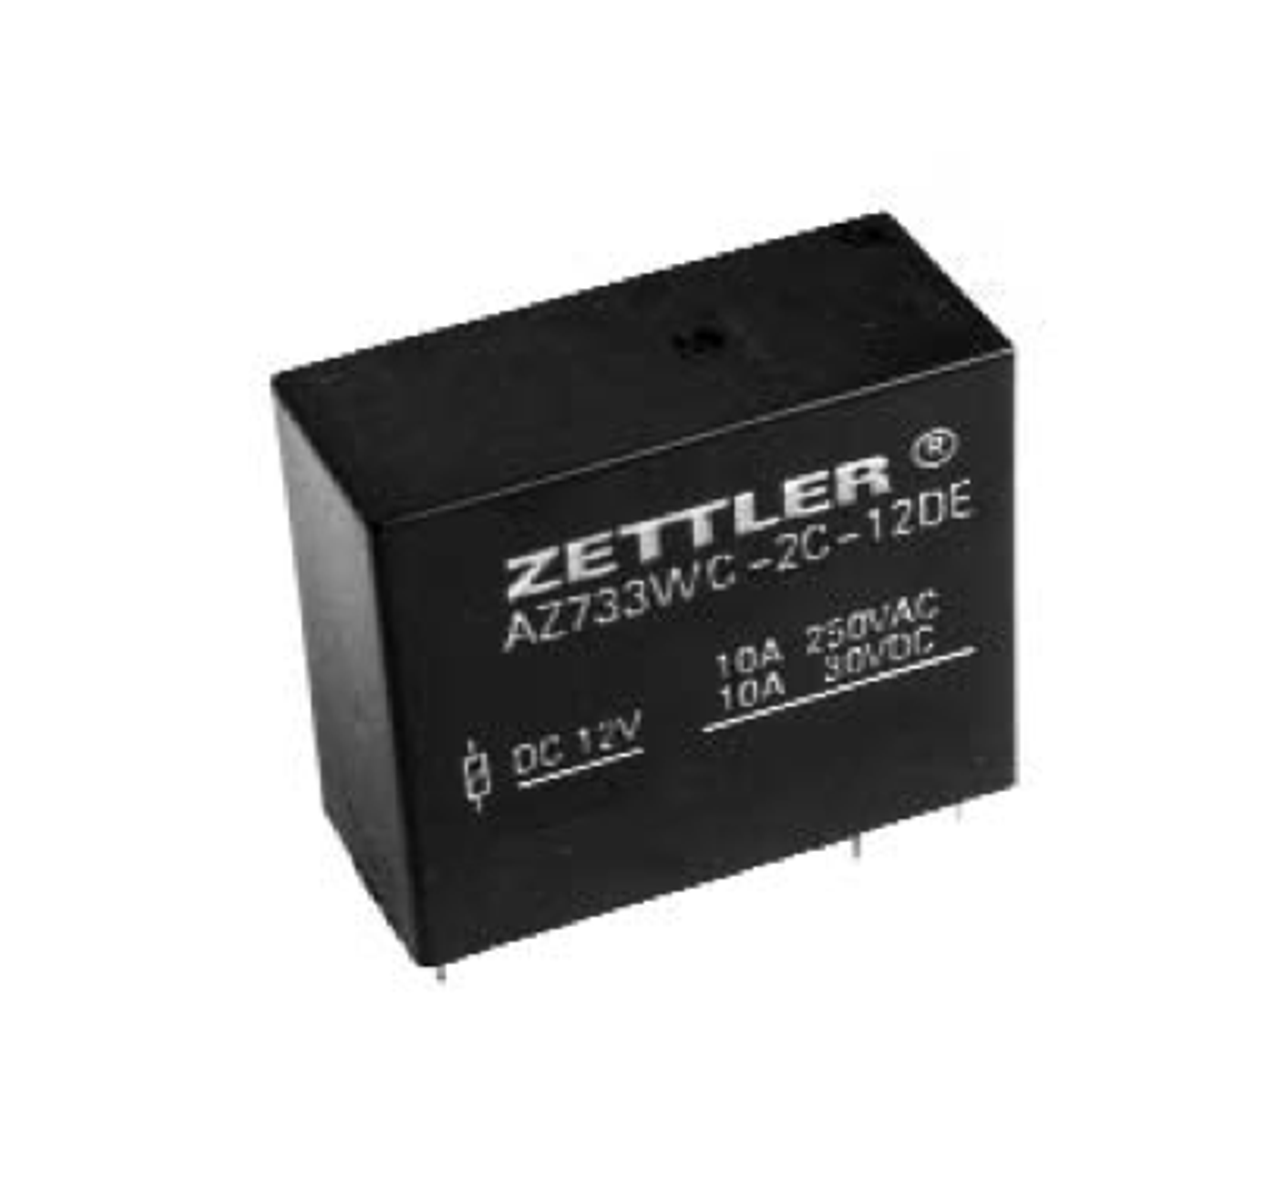 American Zettler AZ733WC-2C-18D Power Relay